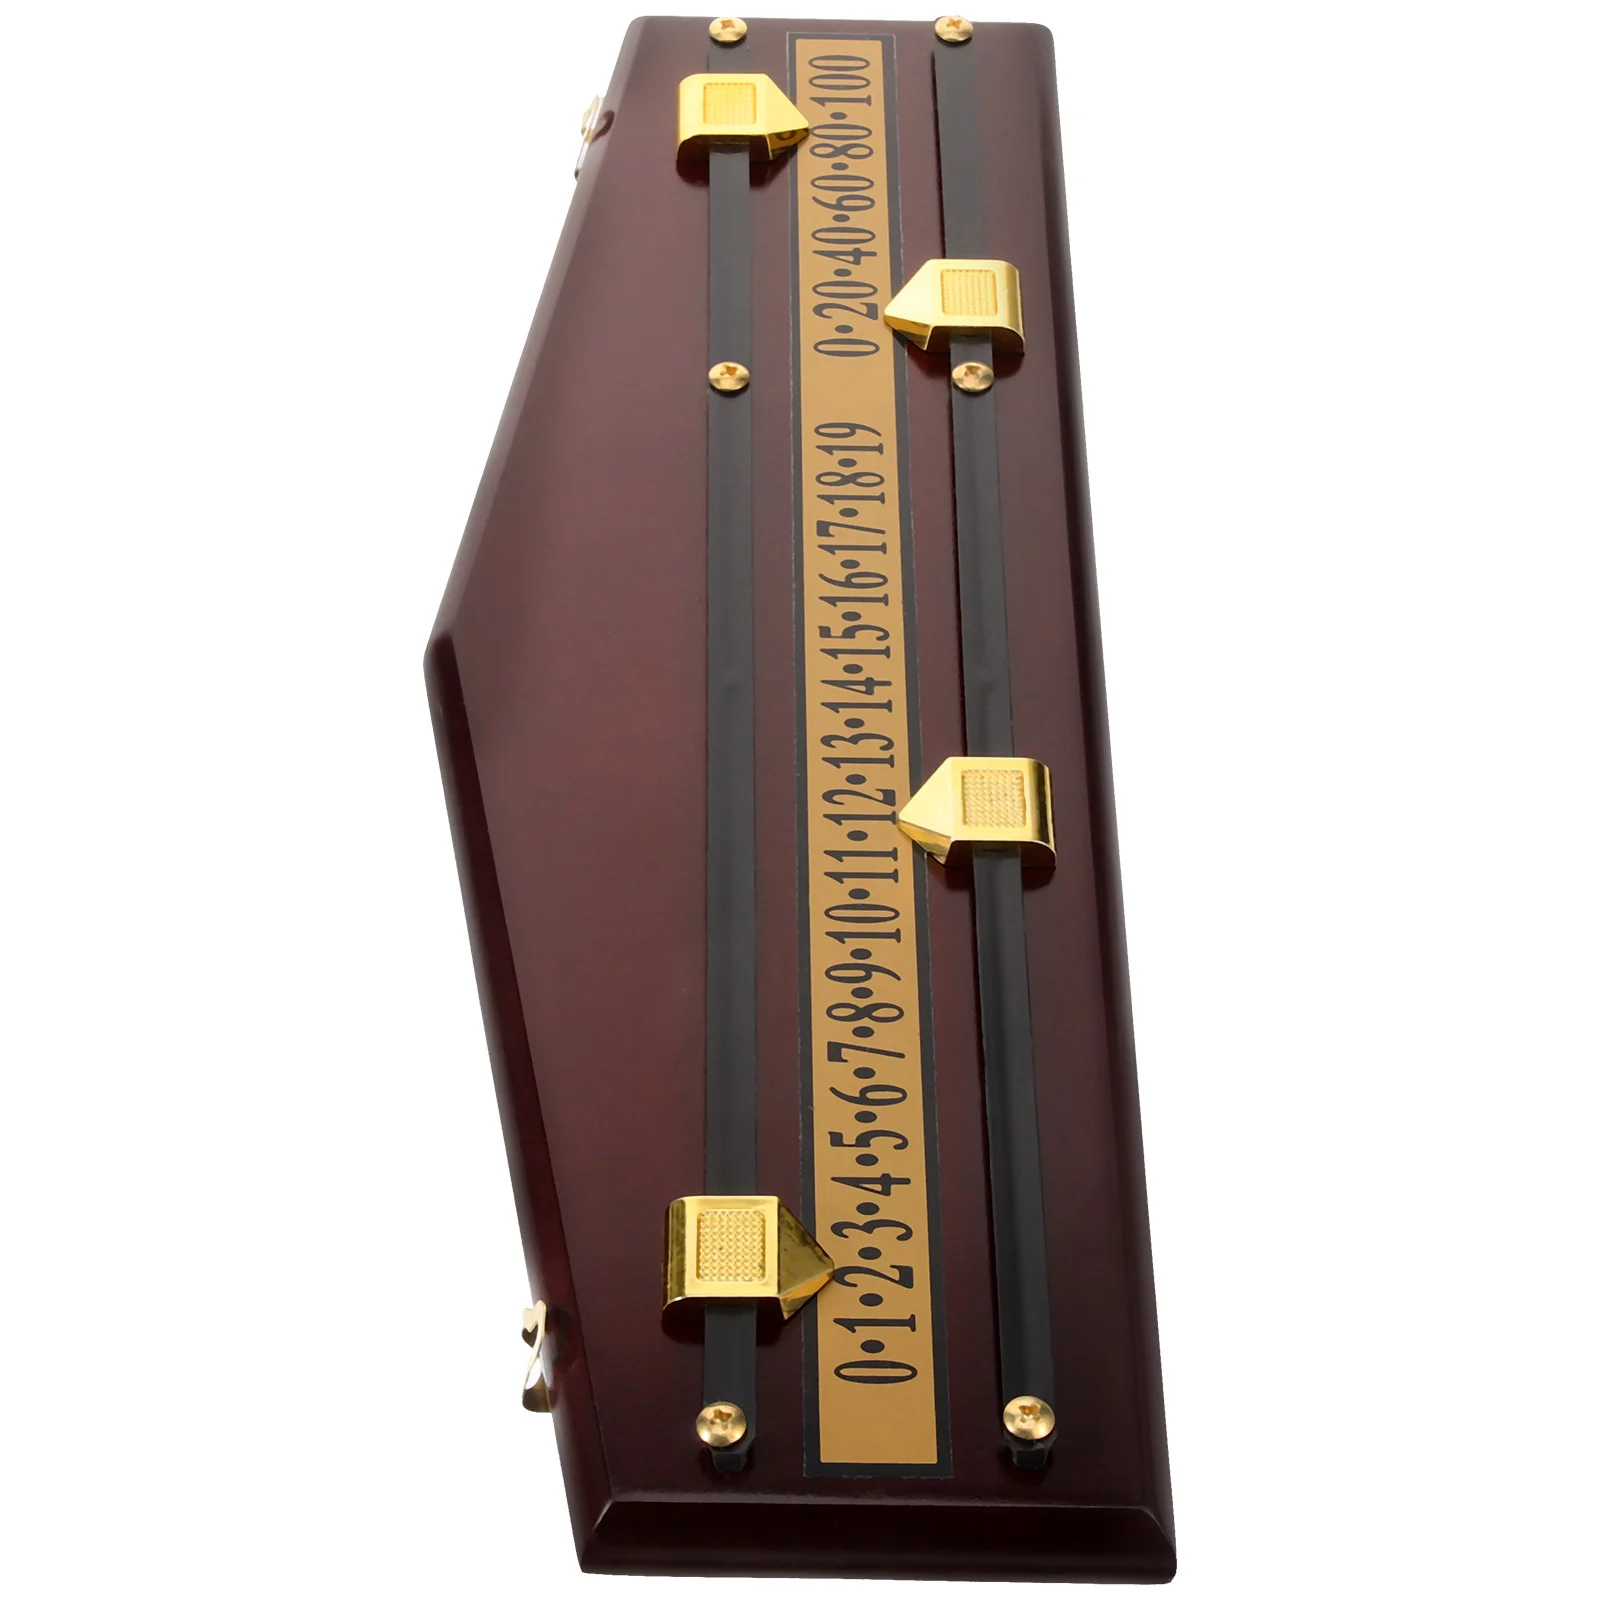 

Shuffleboard Table Top Useful Convenient Score Board For Billiard Scoreboard Flipper Wood Score Keeper Snooker Tabletop